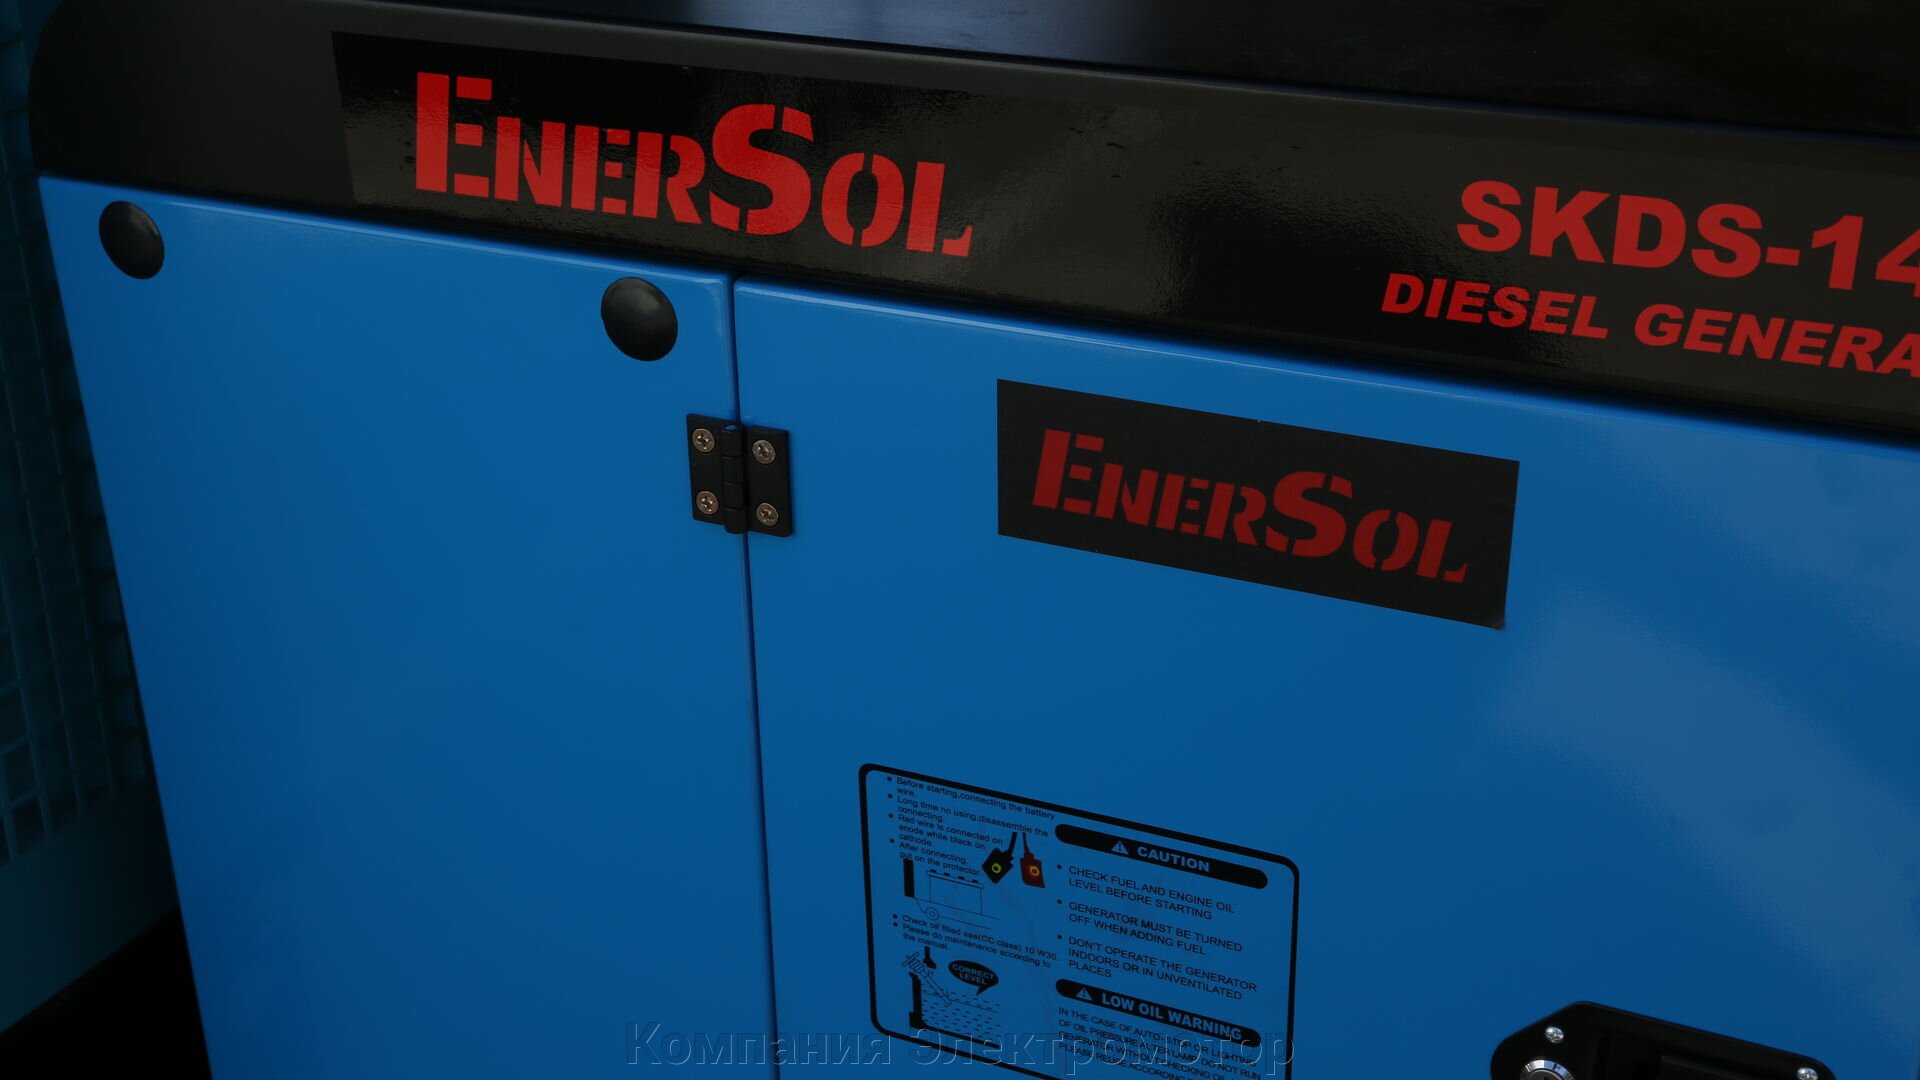 Дизельный генератор EnerSol SKDS-14E(B)